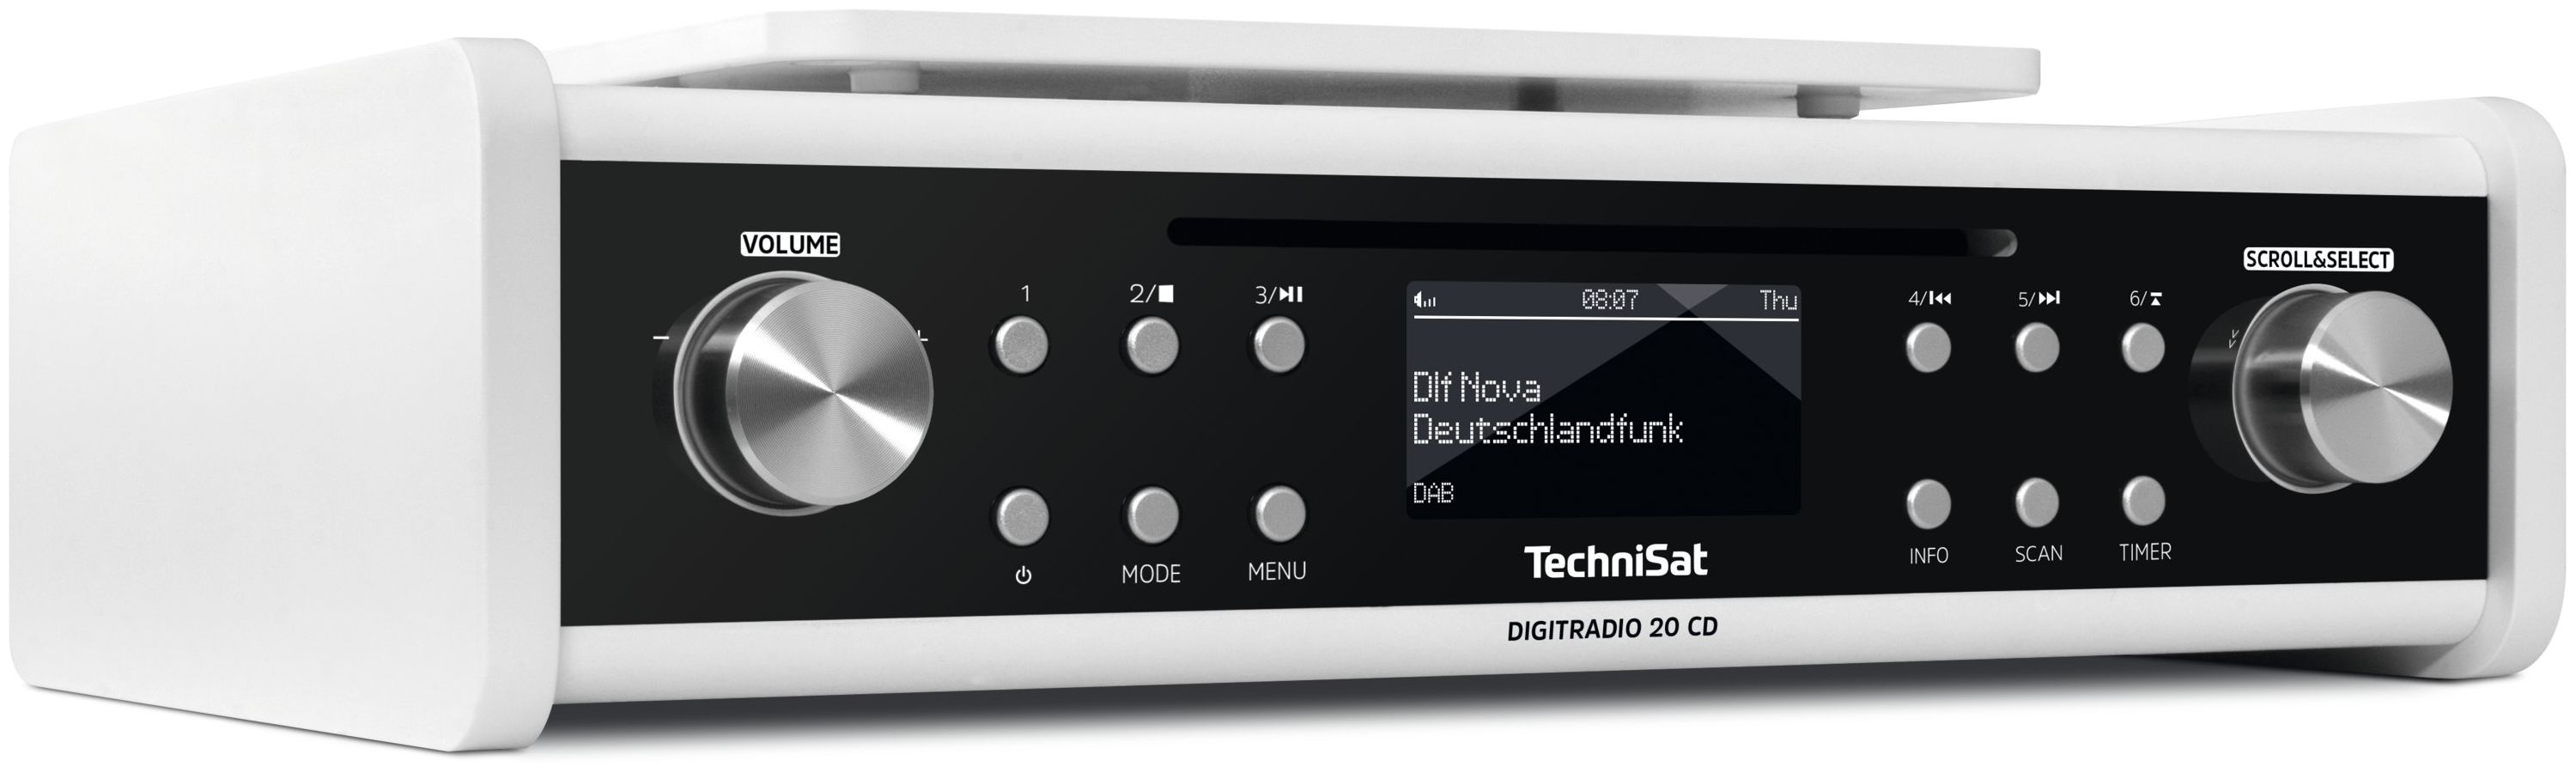 TechniSat DigitRadio 20CD DAB, UHF, DAB+, von (Weiß) Radio Persönlich expert FM, UKW Technomarkt